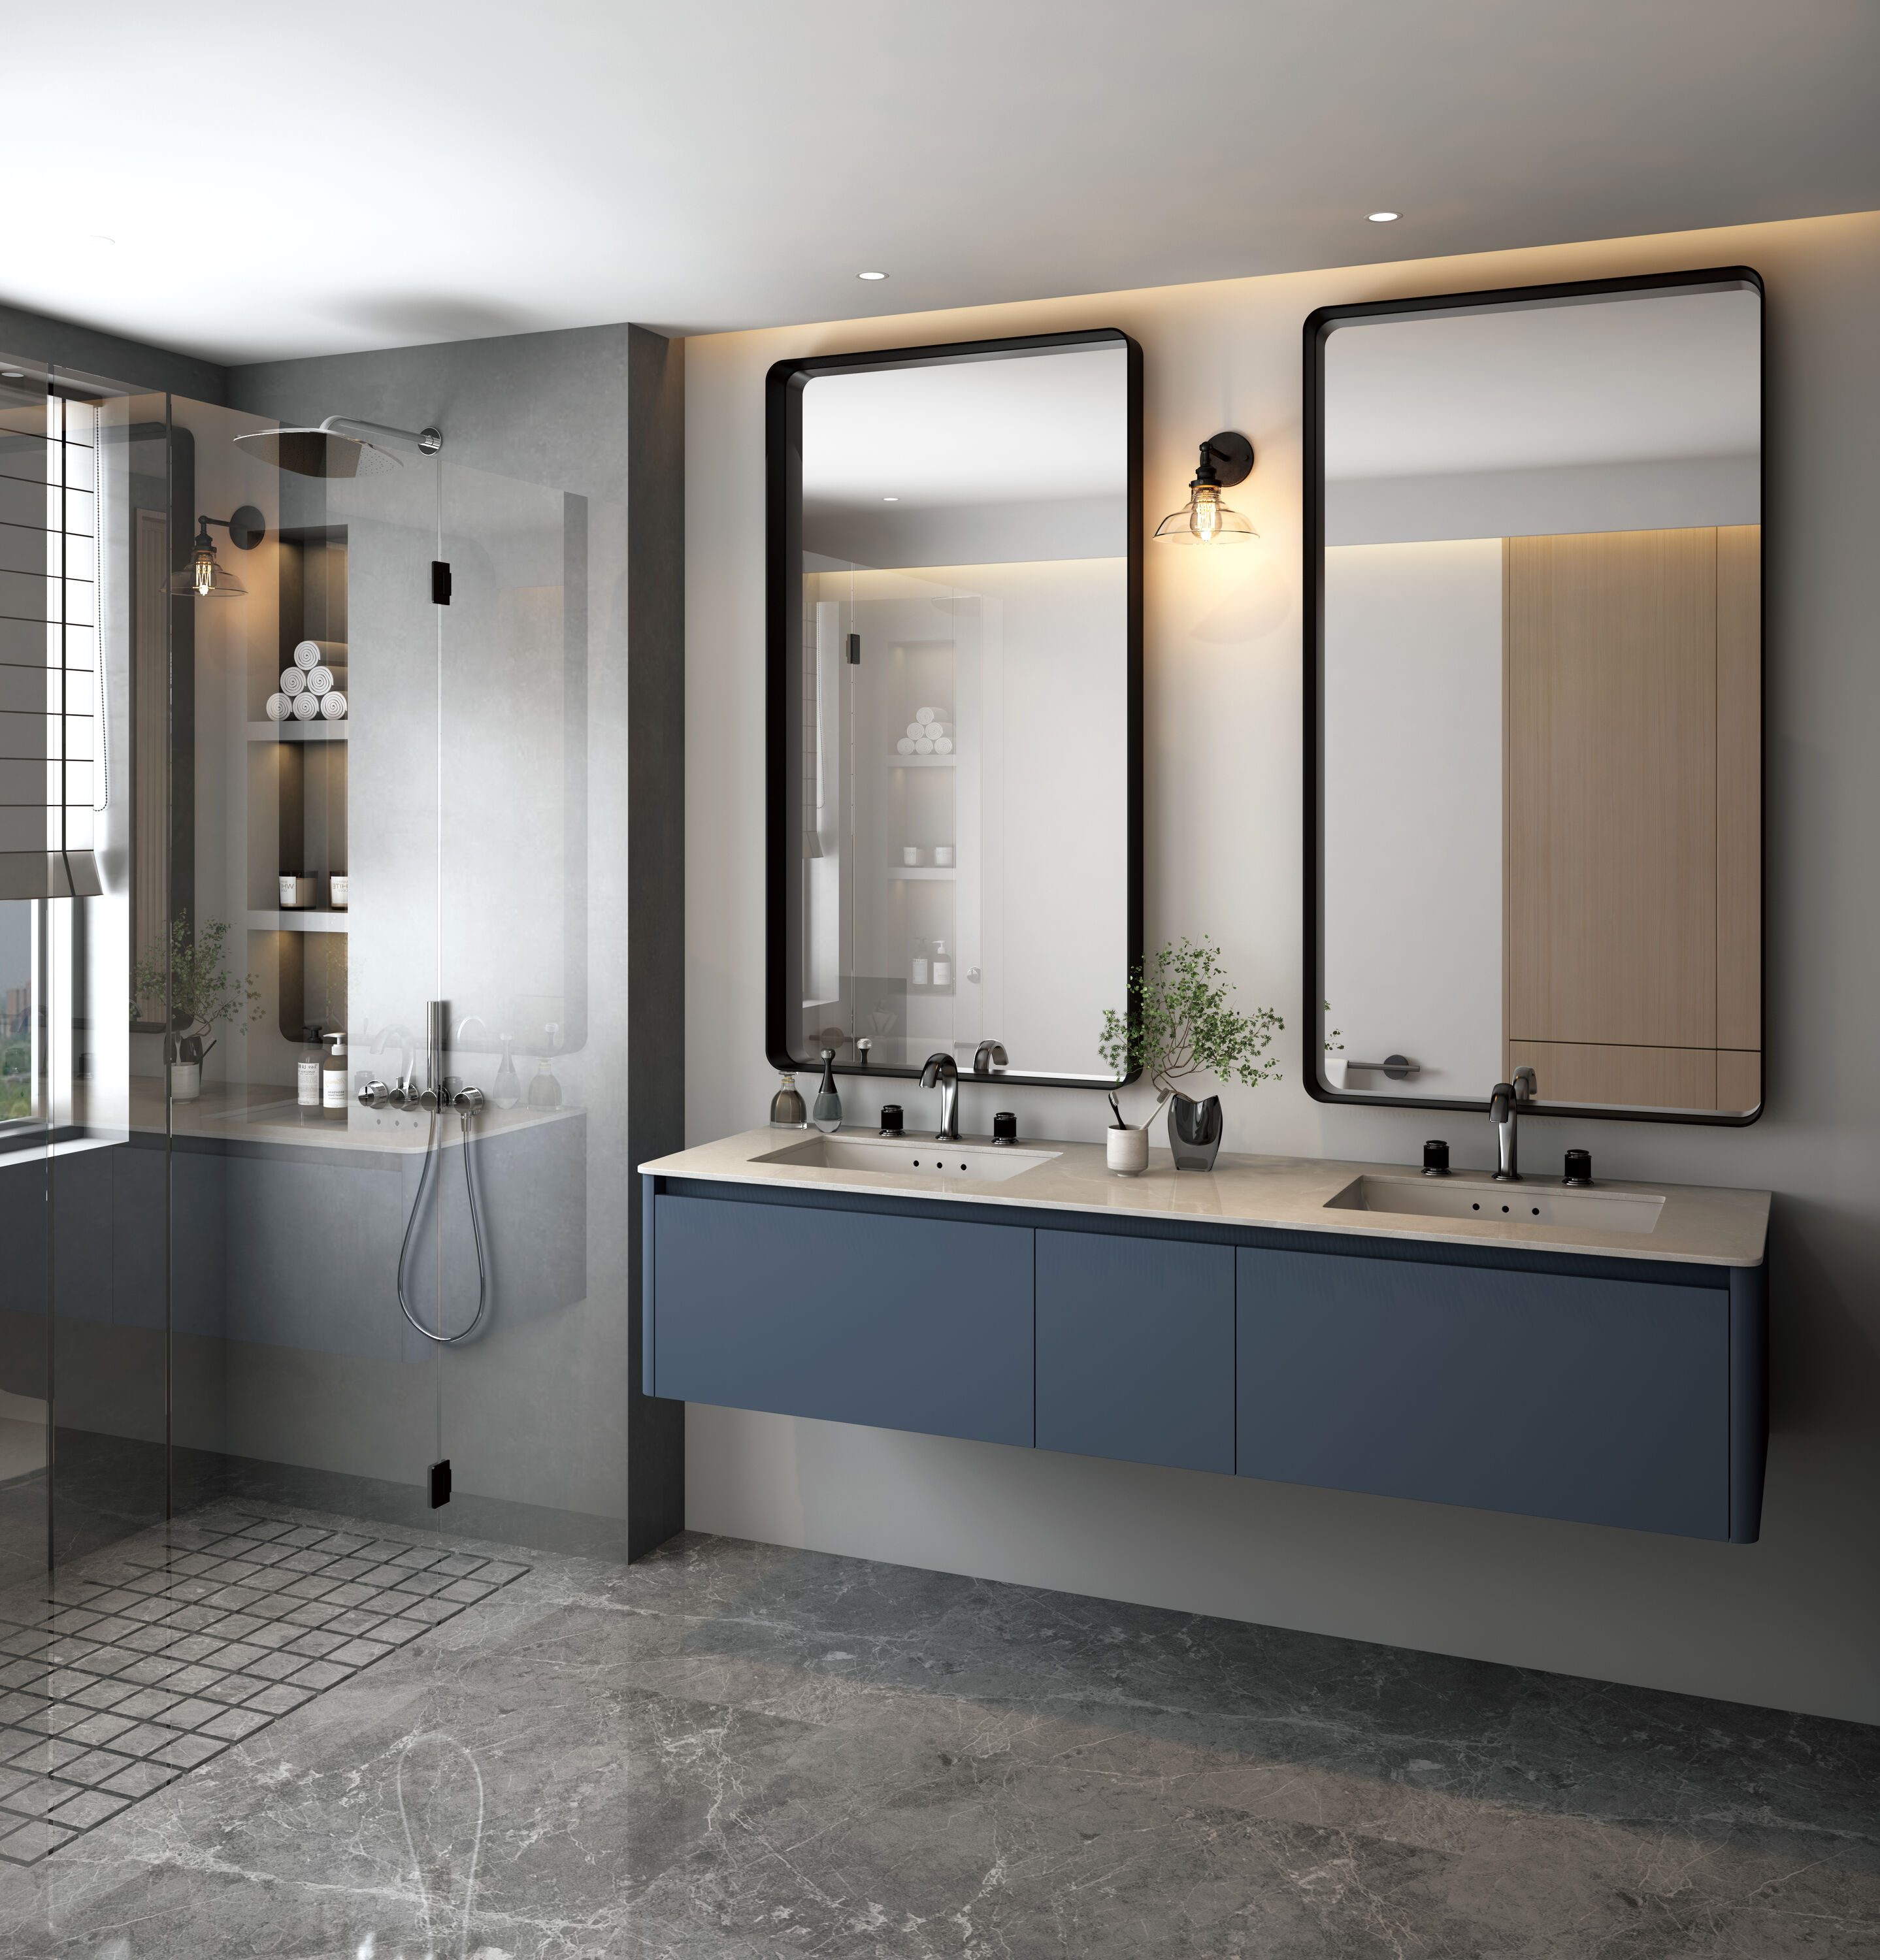 waterpar 40-in x 32-in Framed Bathroom Vanity Mirror (Black) in the ...